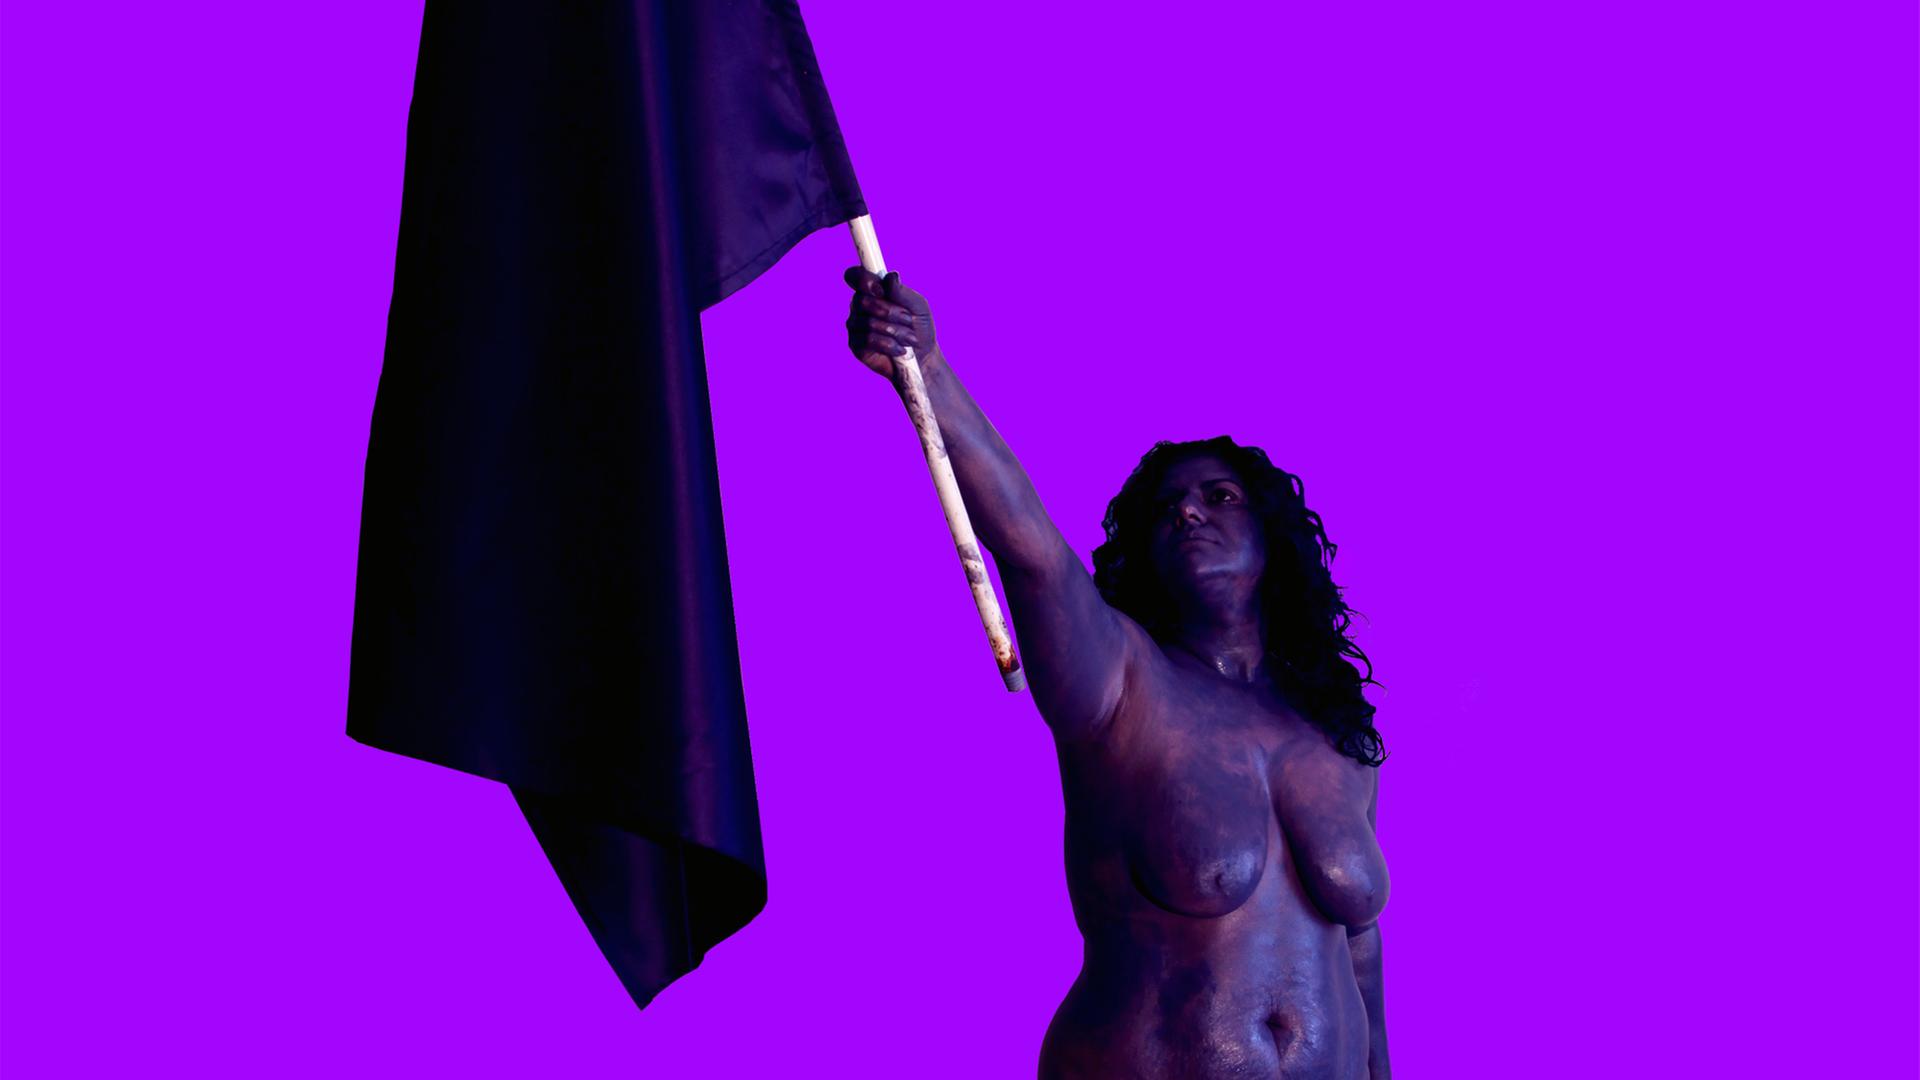 Die Künstlerin CANAN hält - nackt - eine Flagge in die Luft